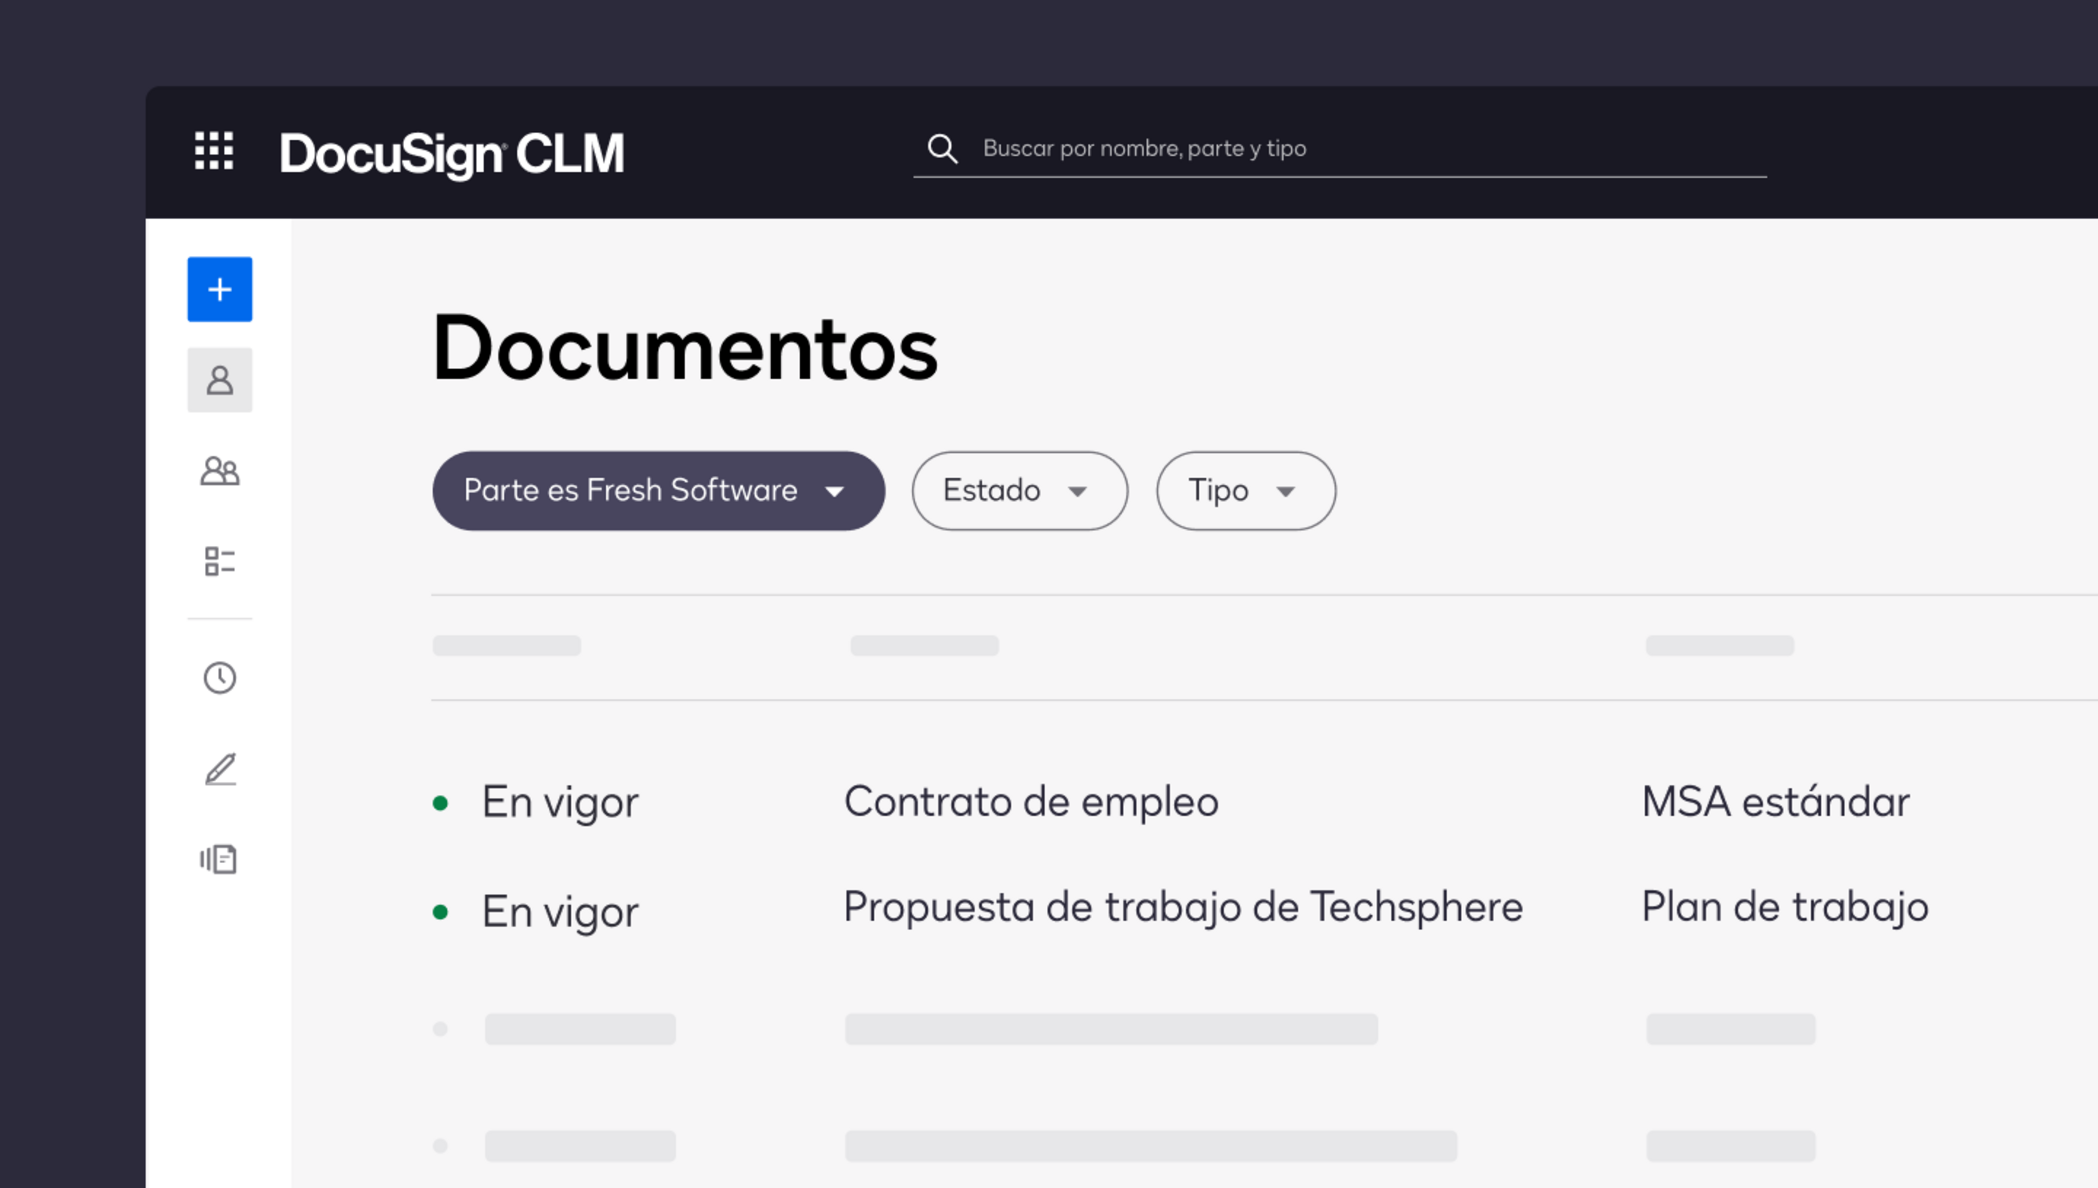 Imagen del producto CLM mostrando todos los contratos en una ubicación centralizada.